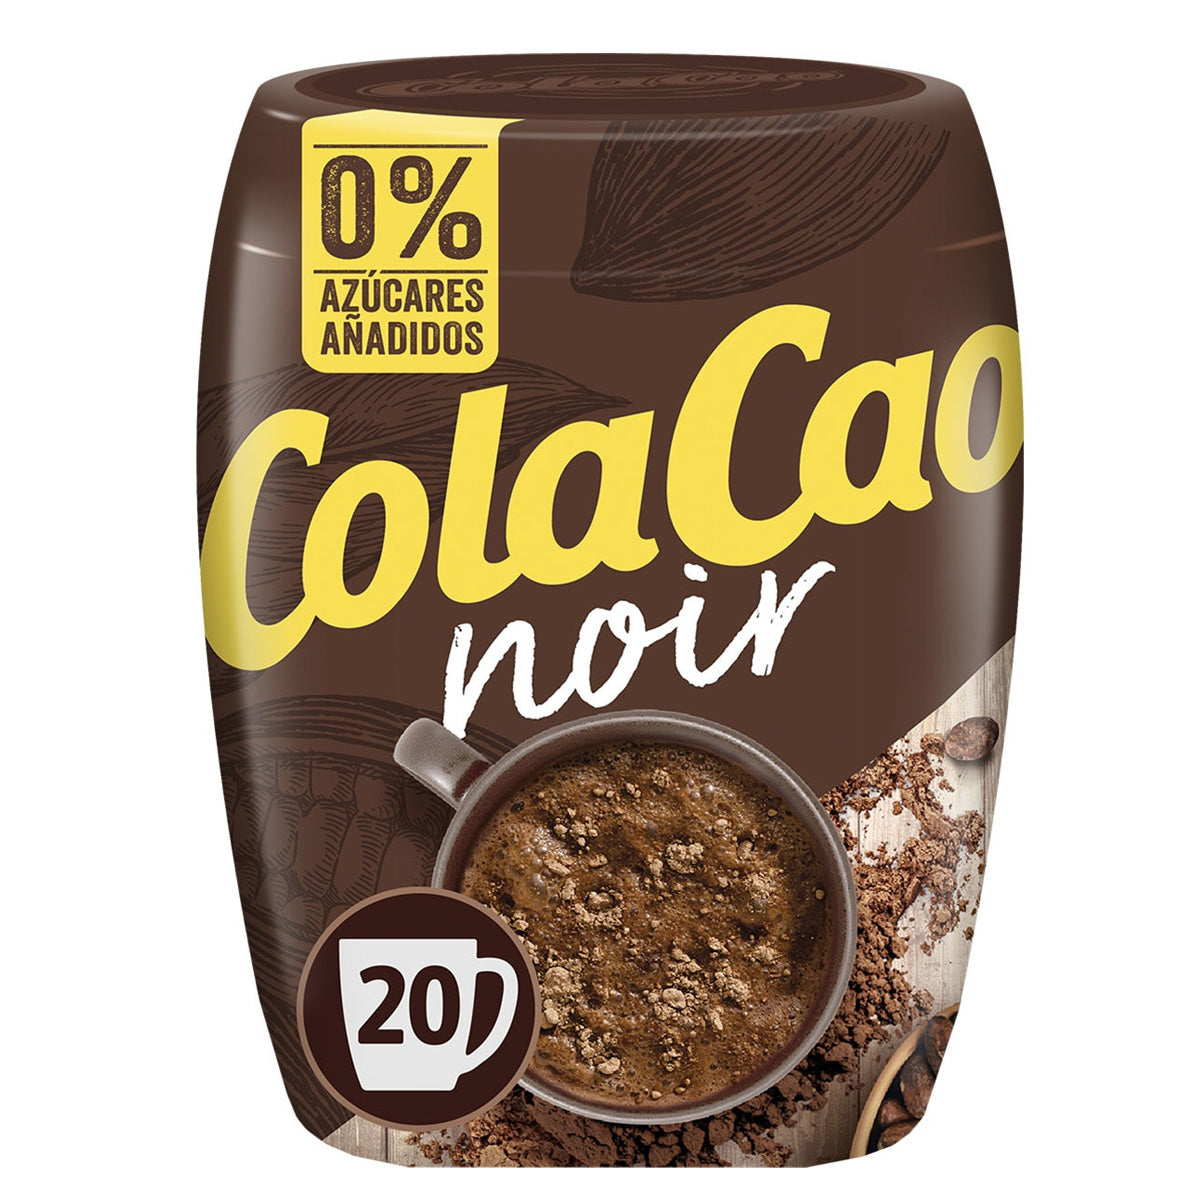 ColaCao Original Formato Ahorro 7,1Kg »